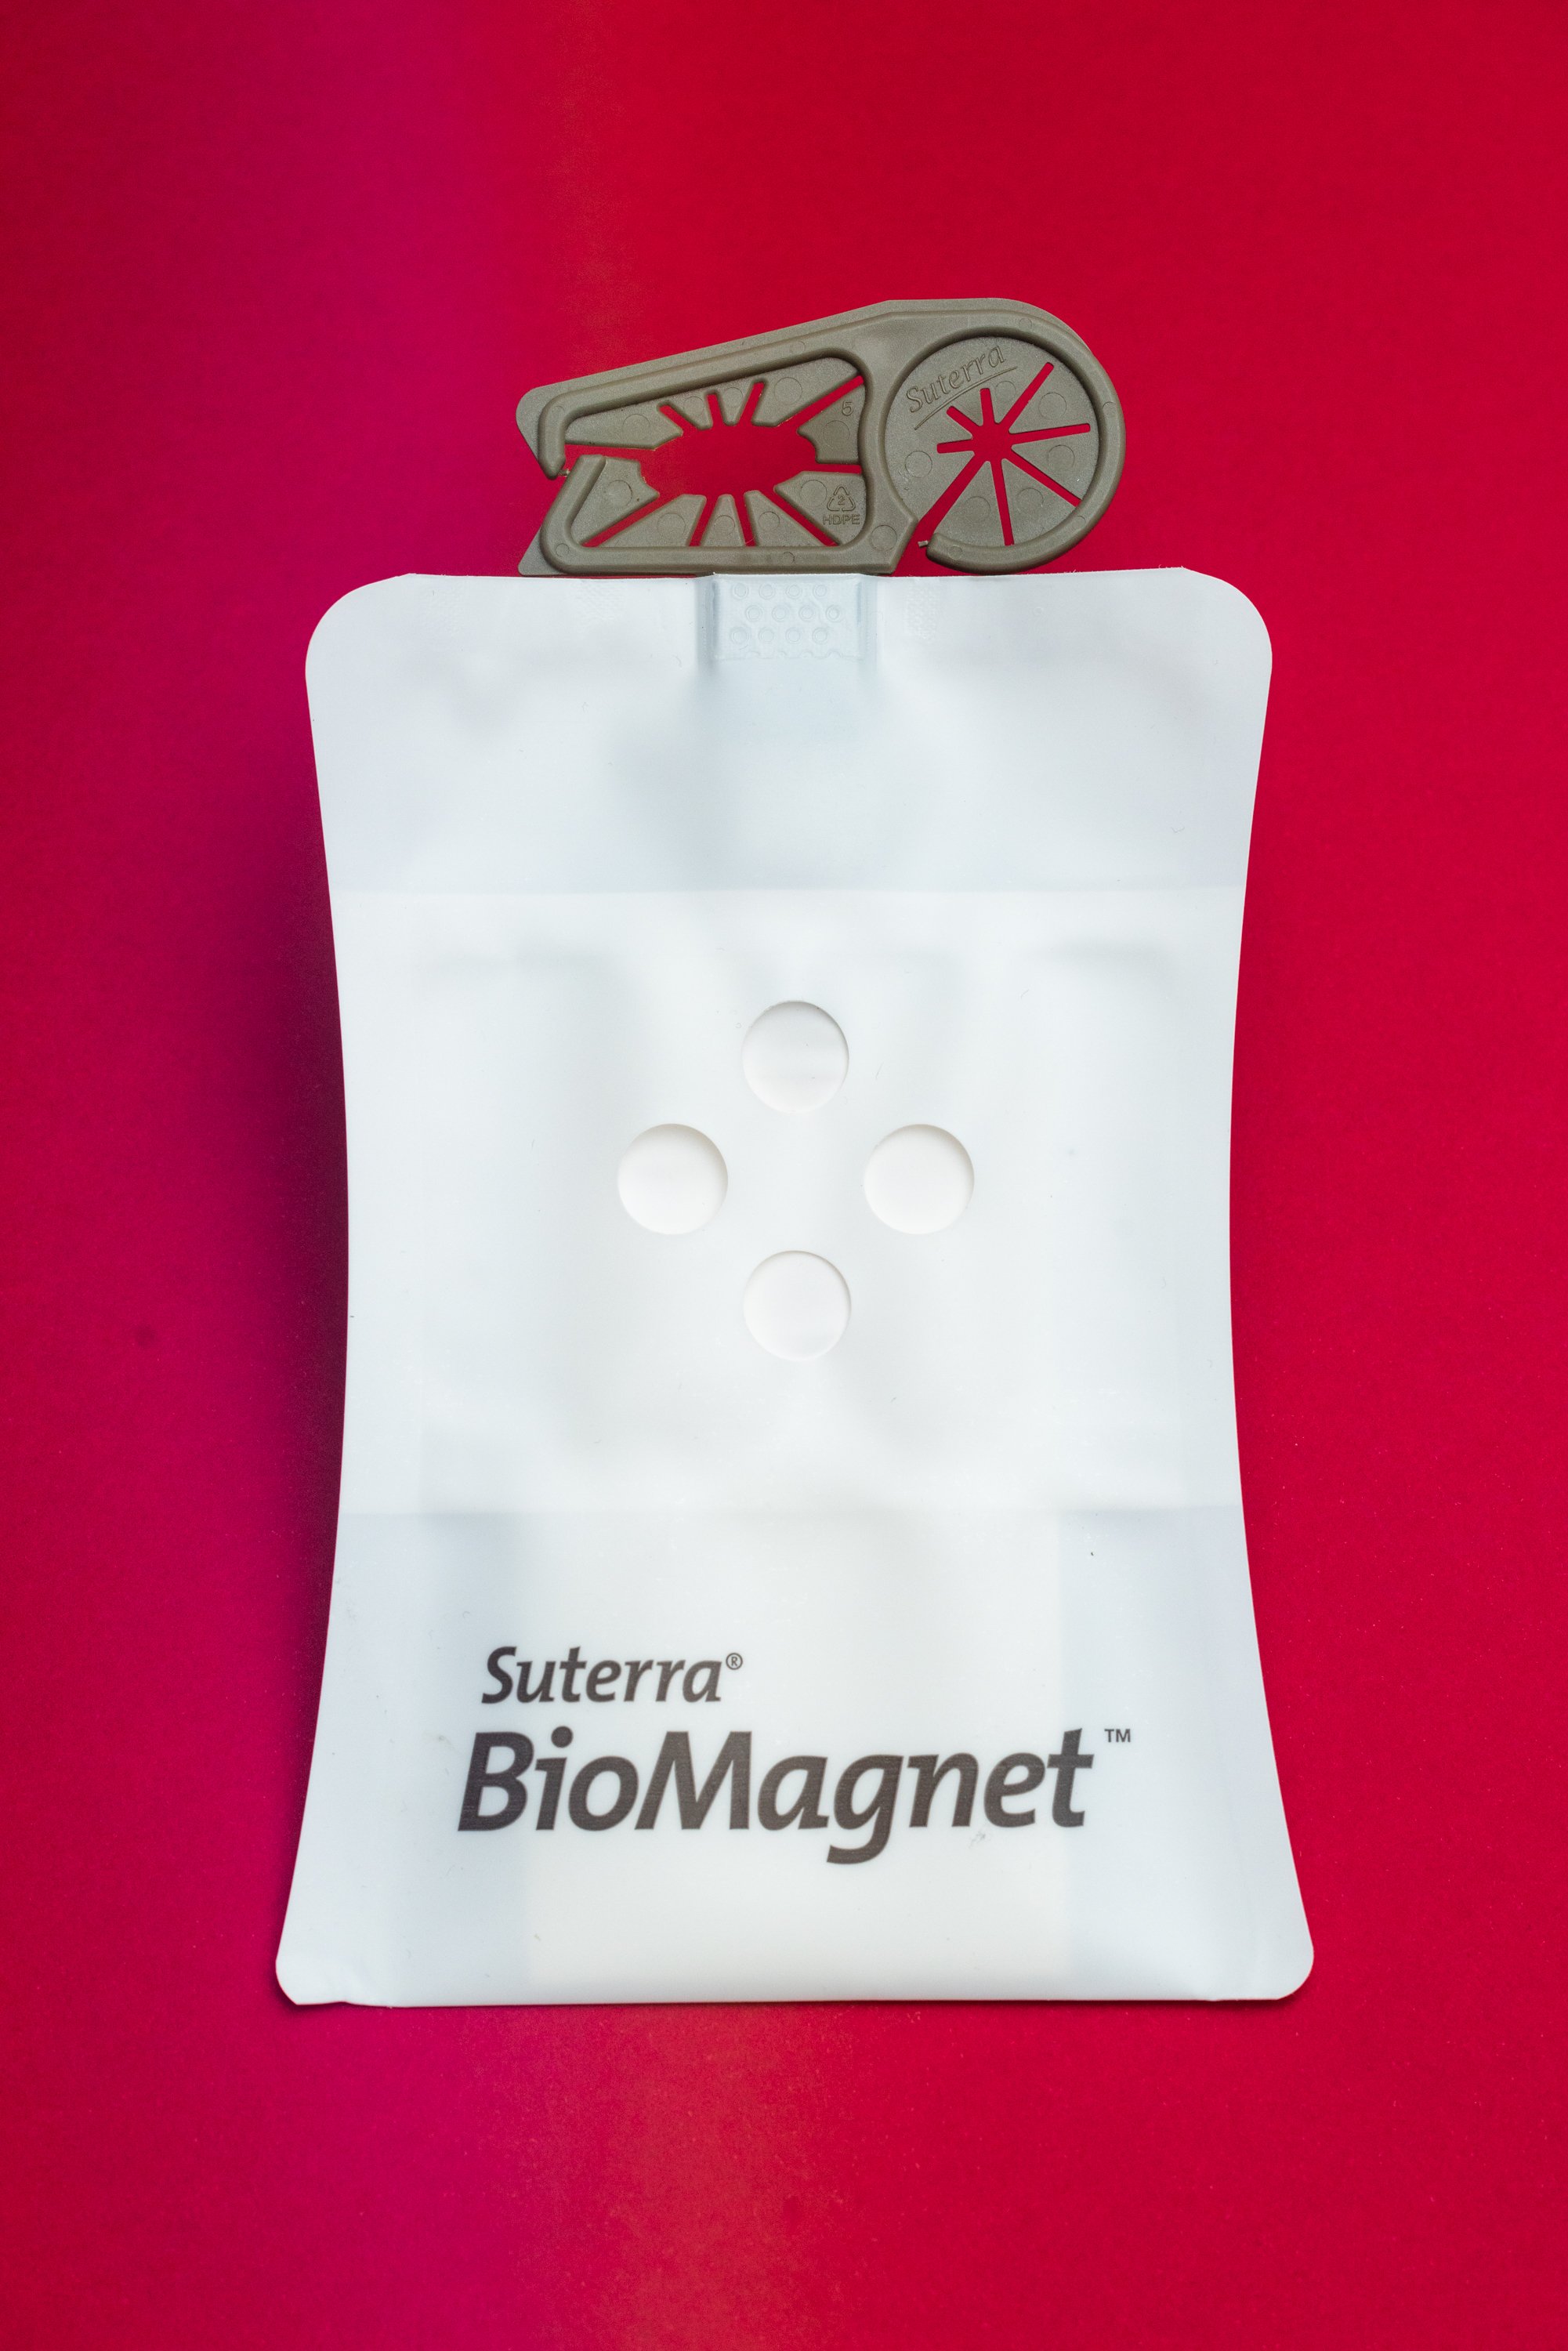 biomagnet-producto-suterra©rodrigo-marquez-61 (1)